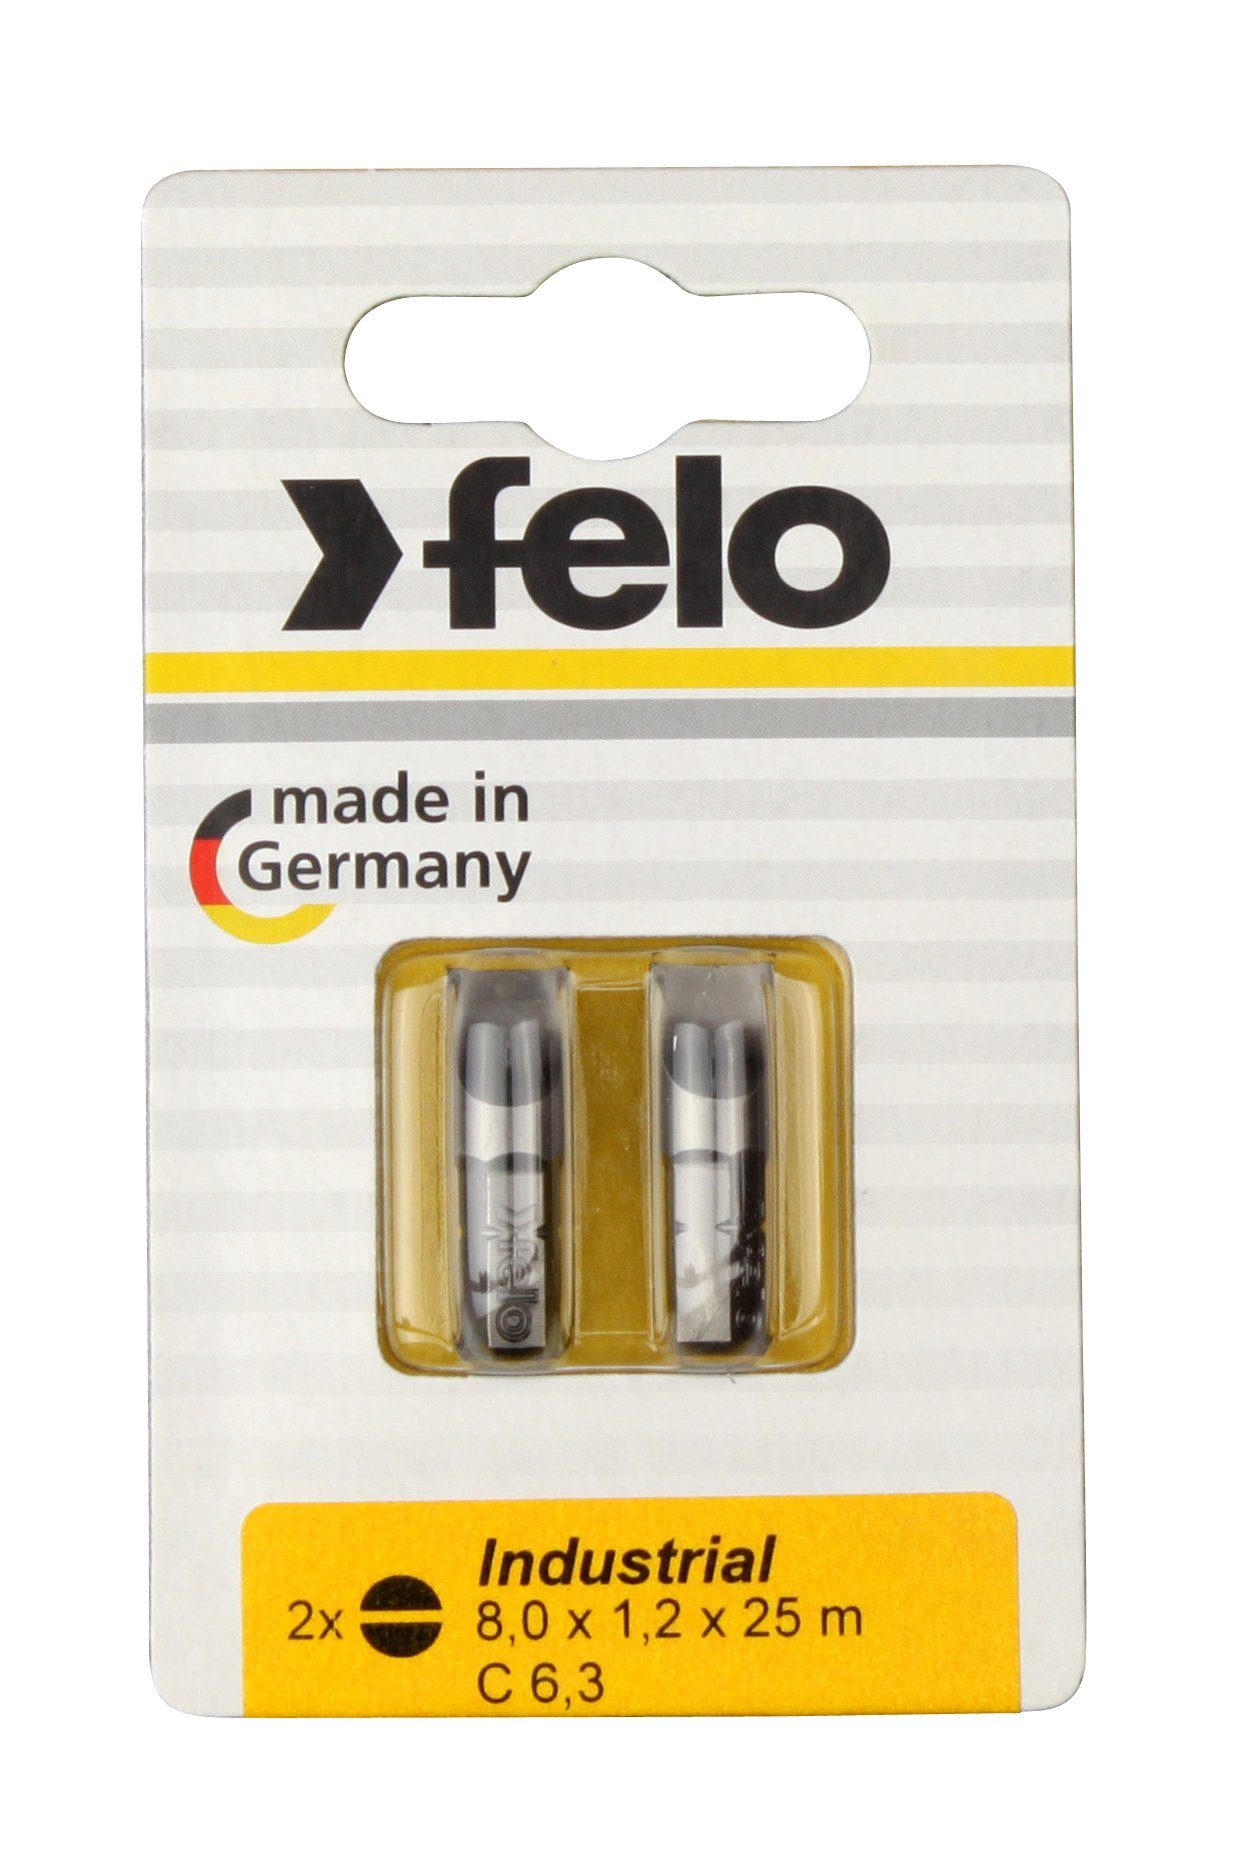 Felo Schlitz-Bit C x x 8,0 Stk 2x auf Bit, 2 1,2 25mm, Industrie Karte 6,3 Felo